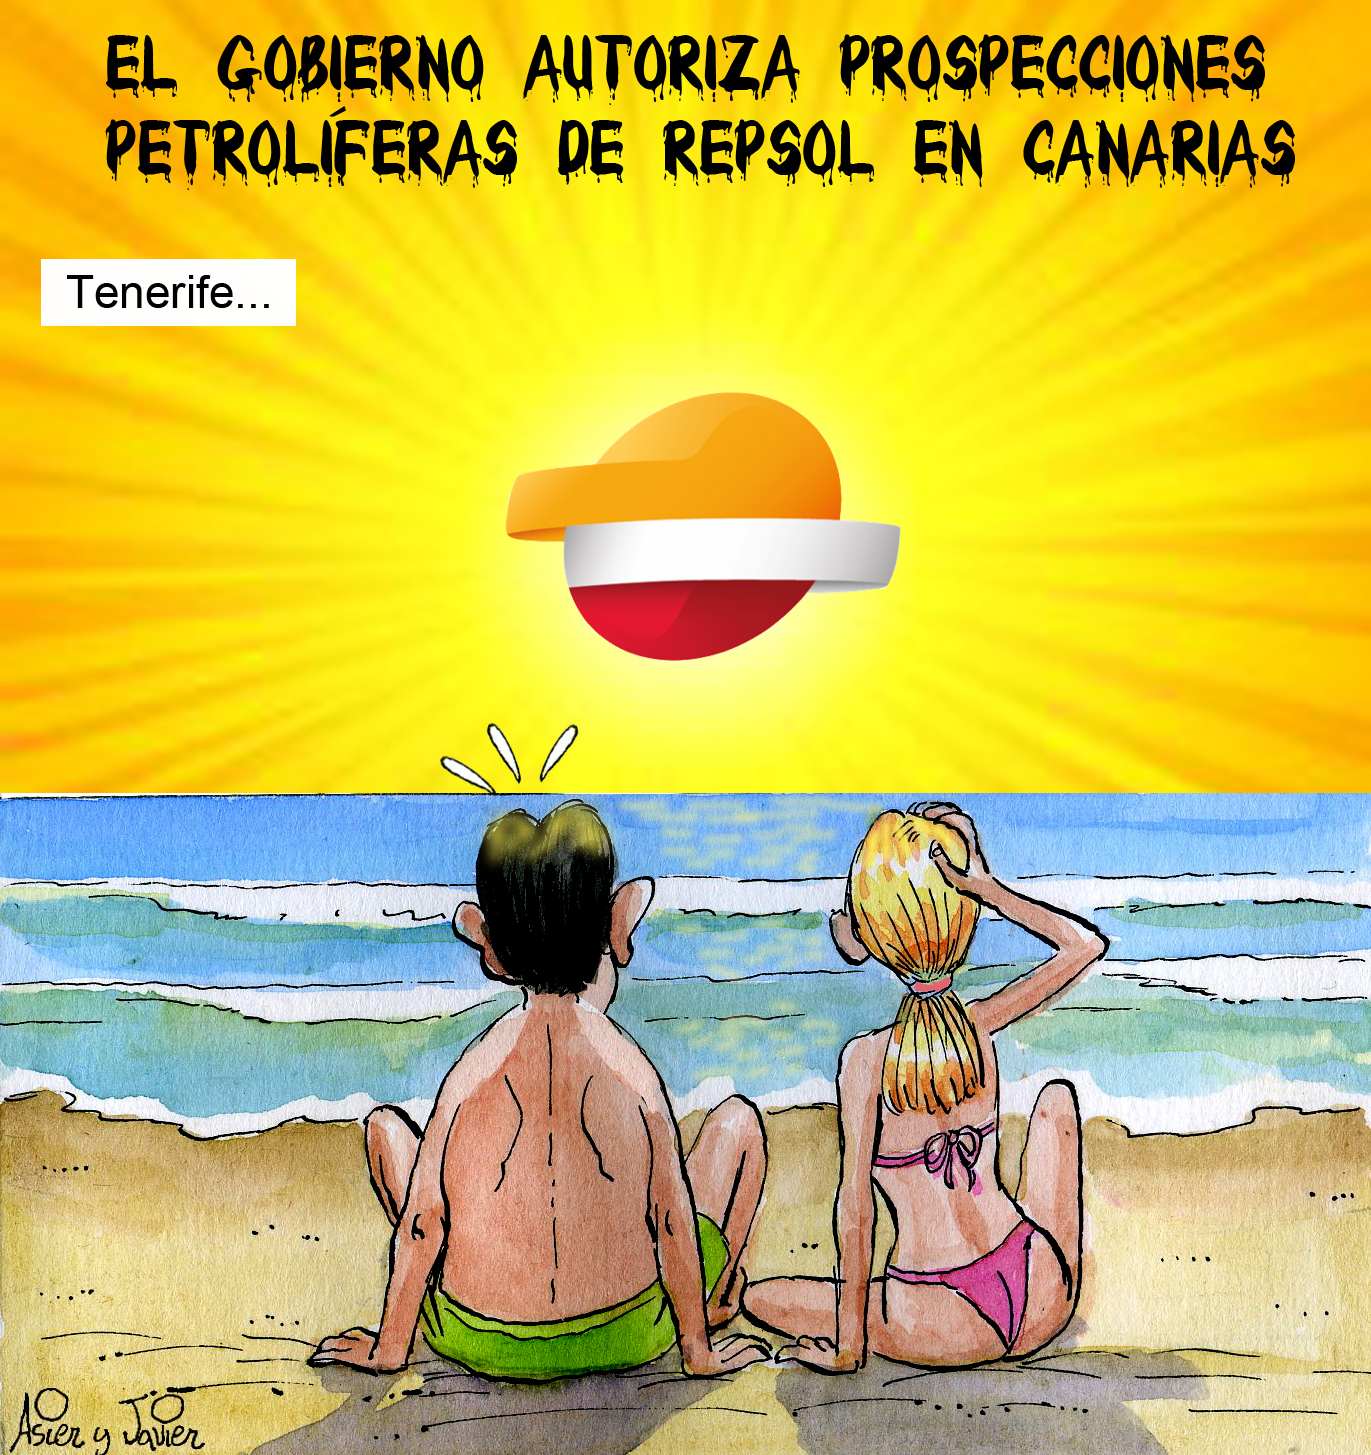 Habrá prospecciones petrolíferas de Repsol en aguas de las Canarias. Viñeta en la revista El Jueves.